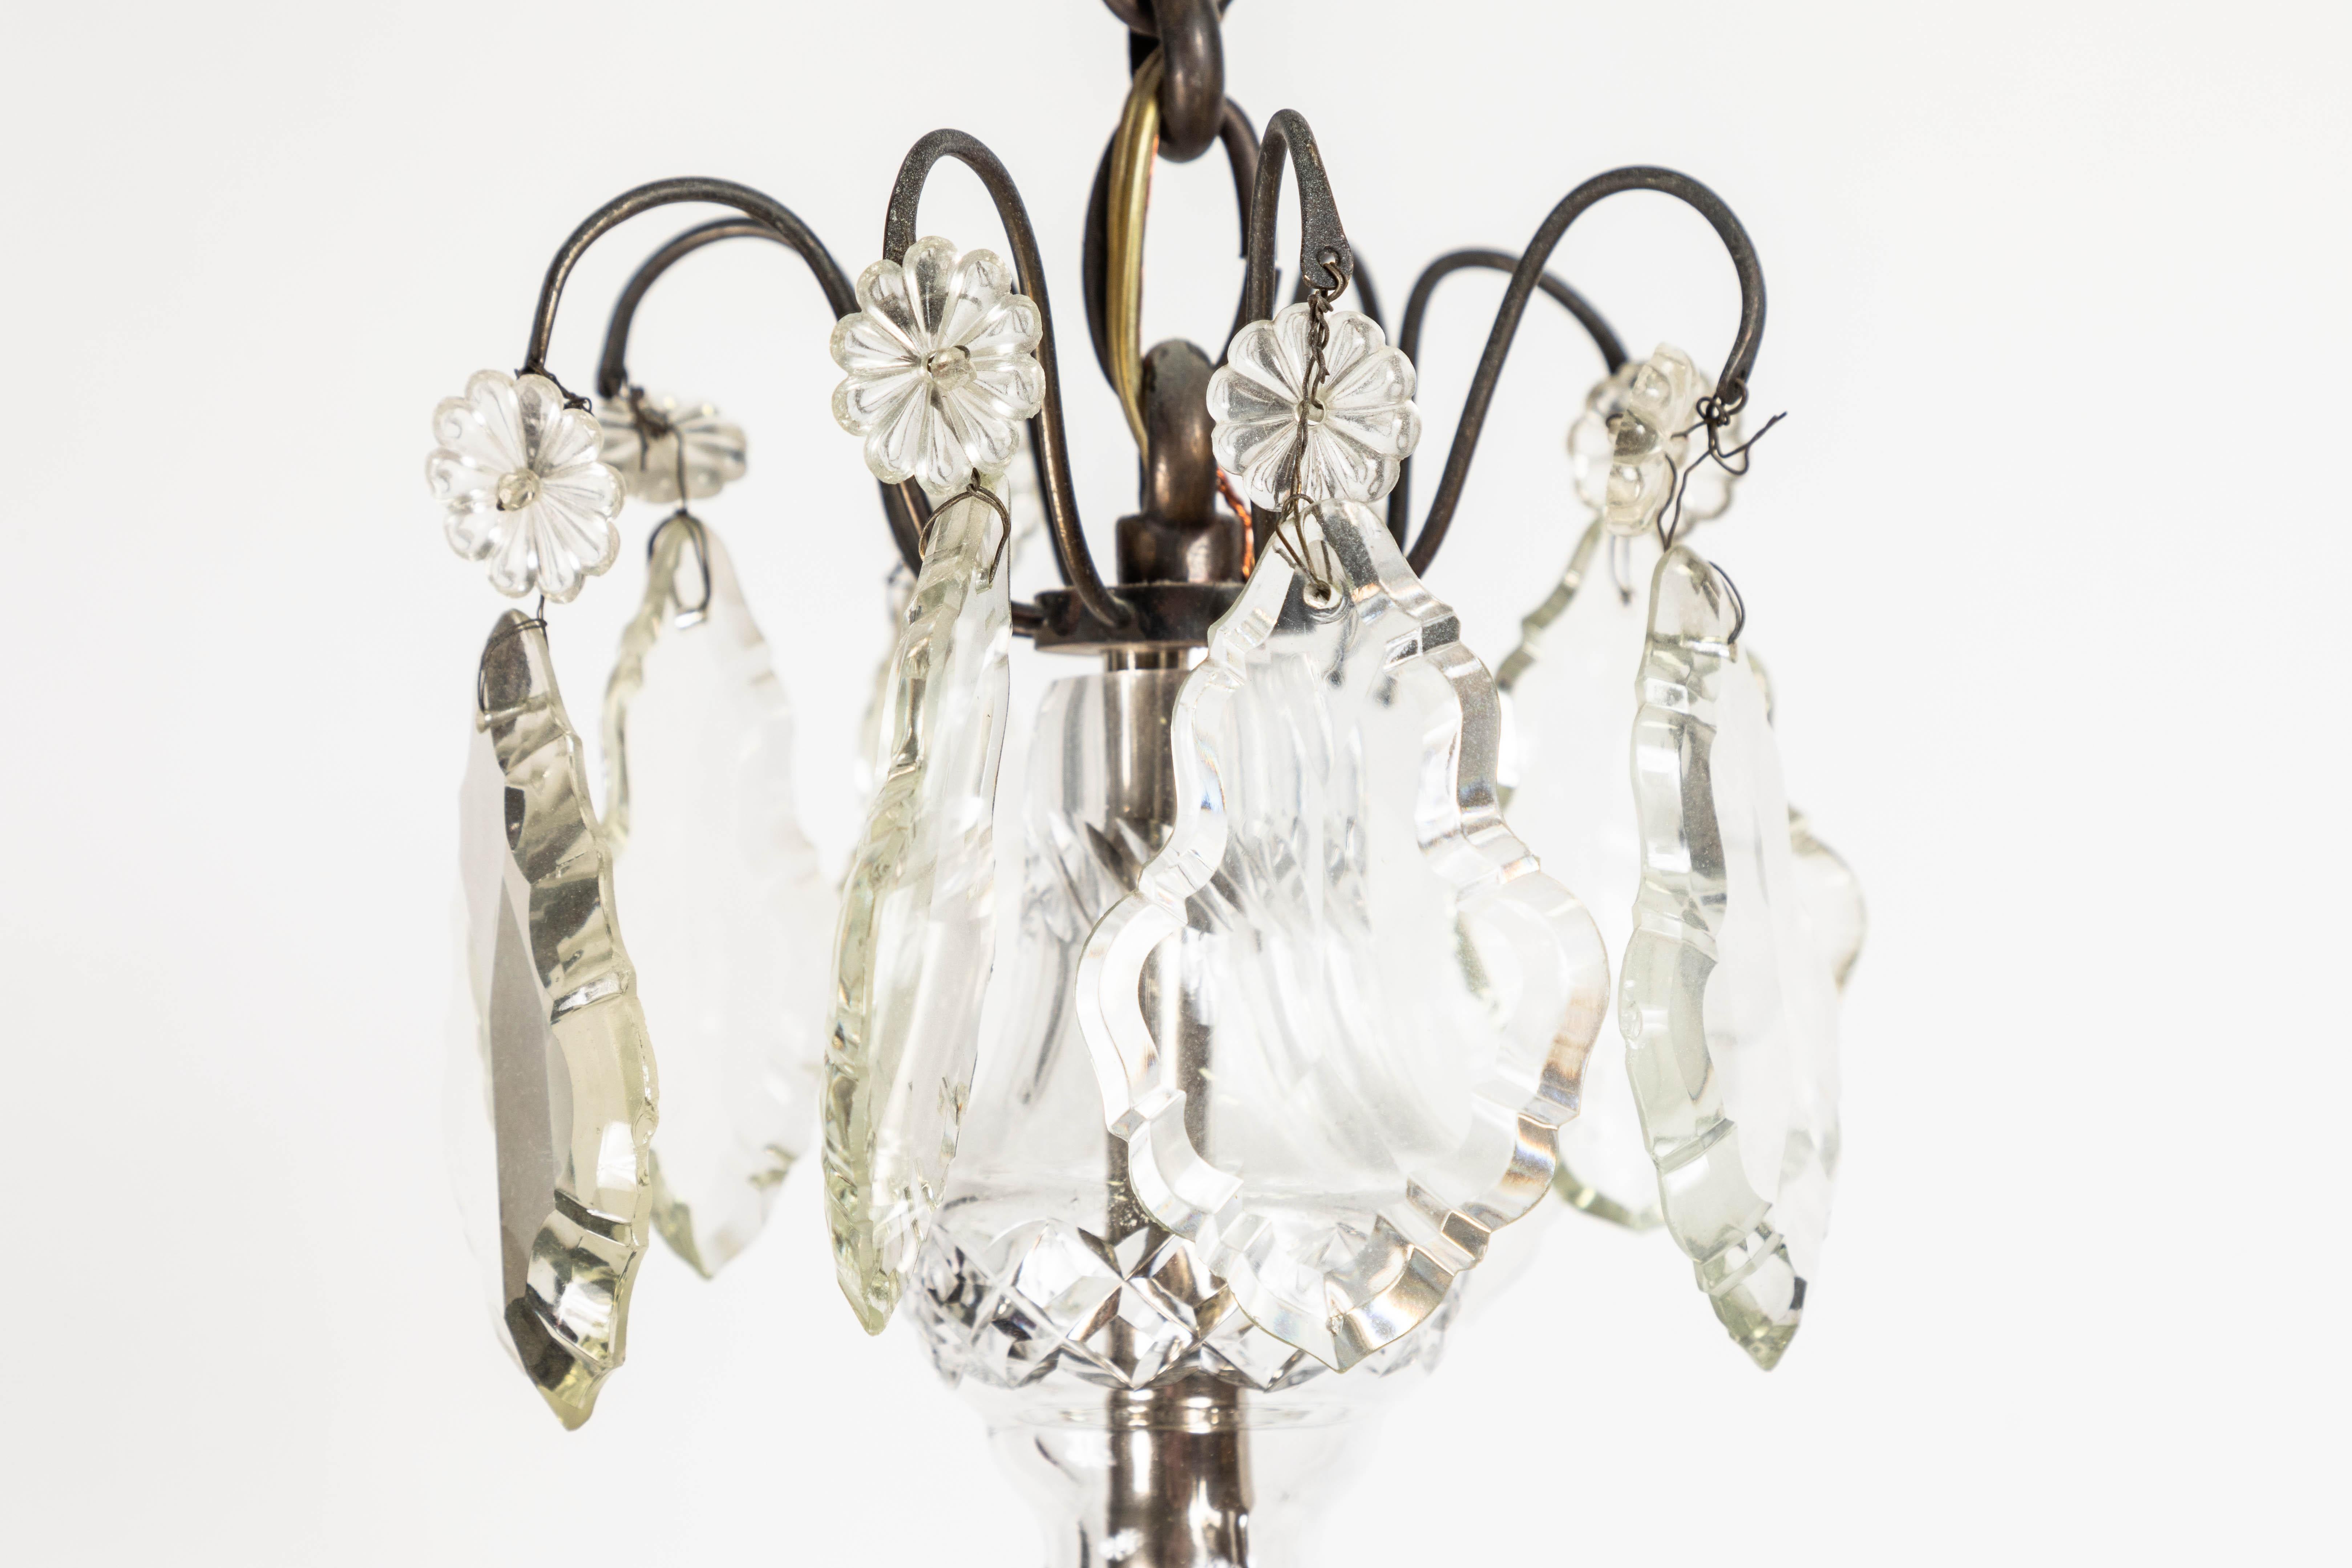 Lustre à 8 lumières en bronze de style rococo français du 19ème siècle avec des cristaux taillés à la main. Chaîne de 19